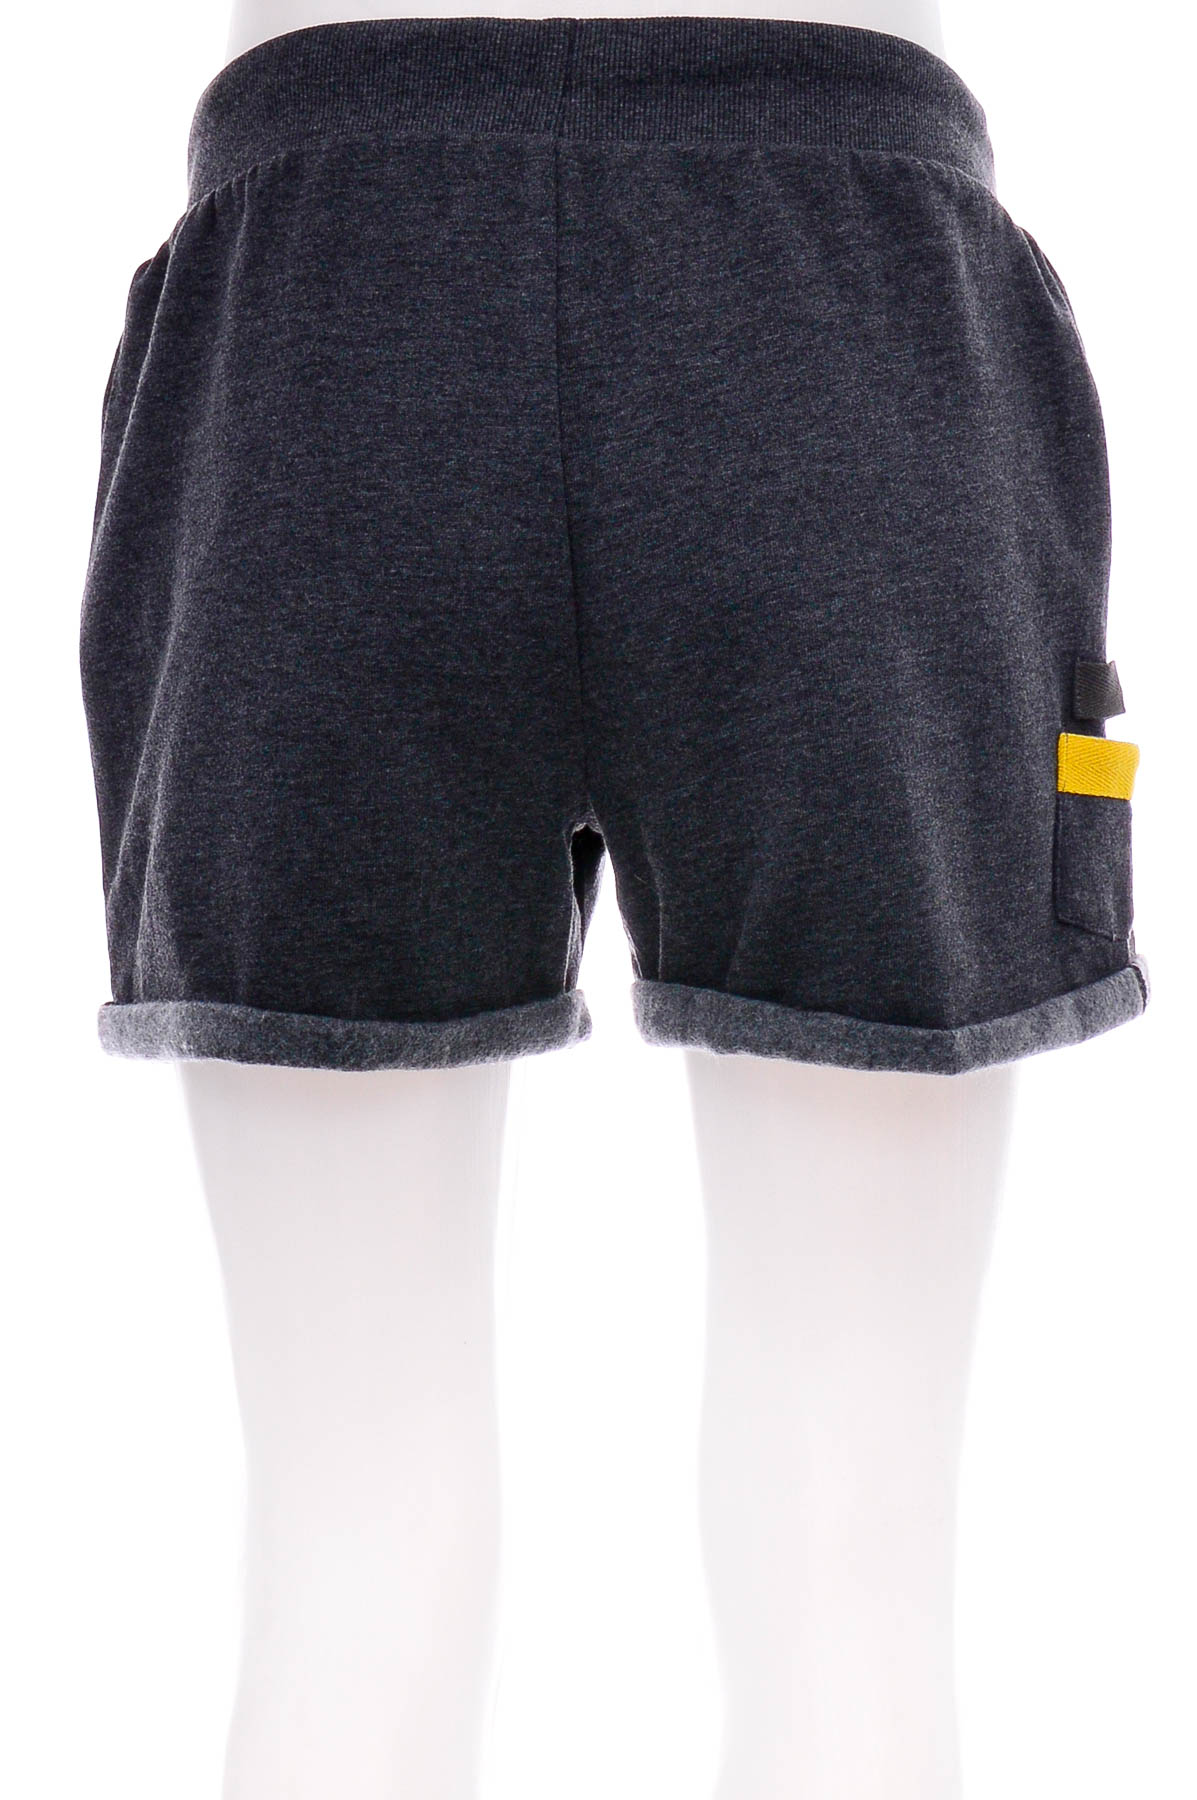 Female shorts - McFIT - 1